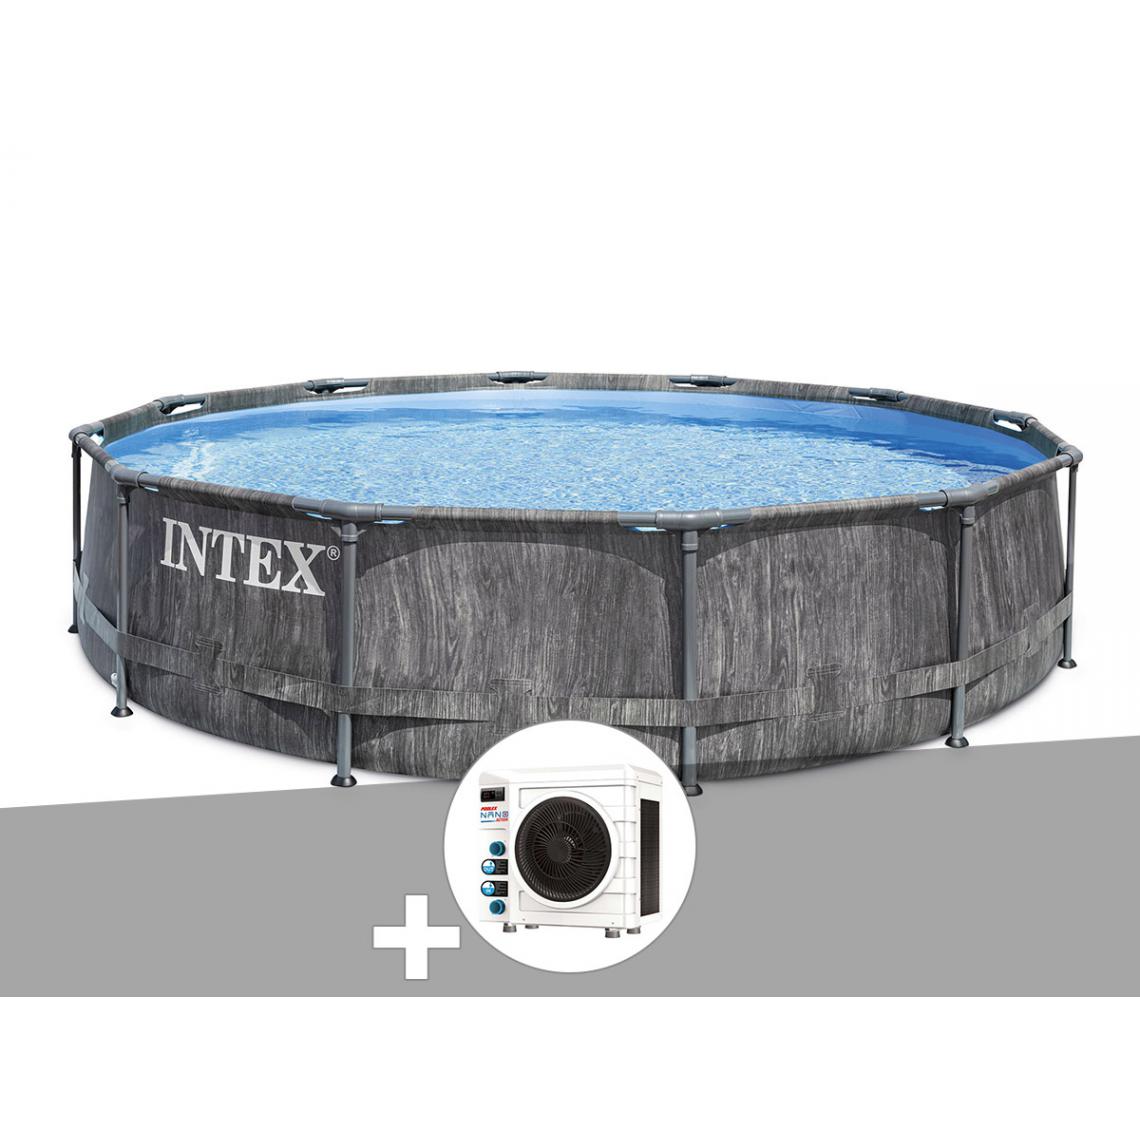 Intex - Kit piscine tubulaire Intex Baltik ronde 5,49 x 1,22 m + Pompe à chaleur - Piscine Tubulaire